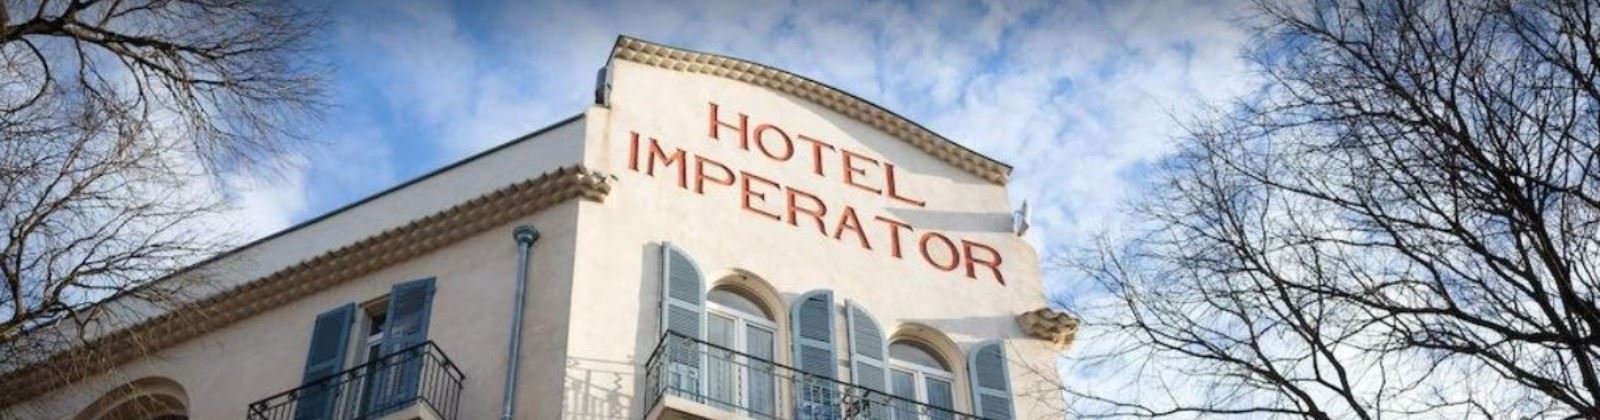 OLEVENE image - hotel-imperator-olevene-restaurant-